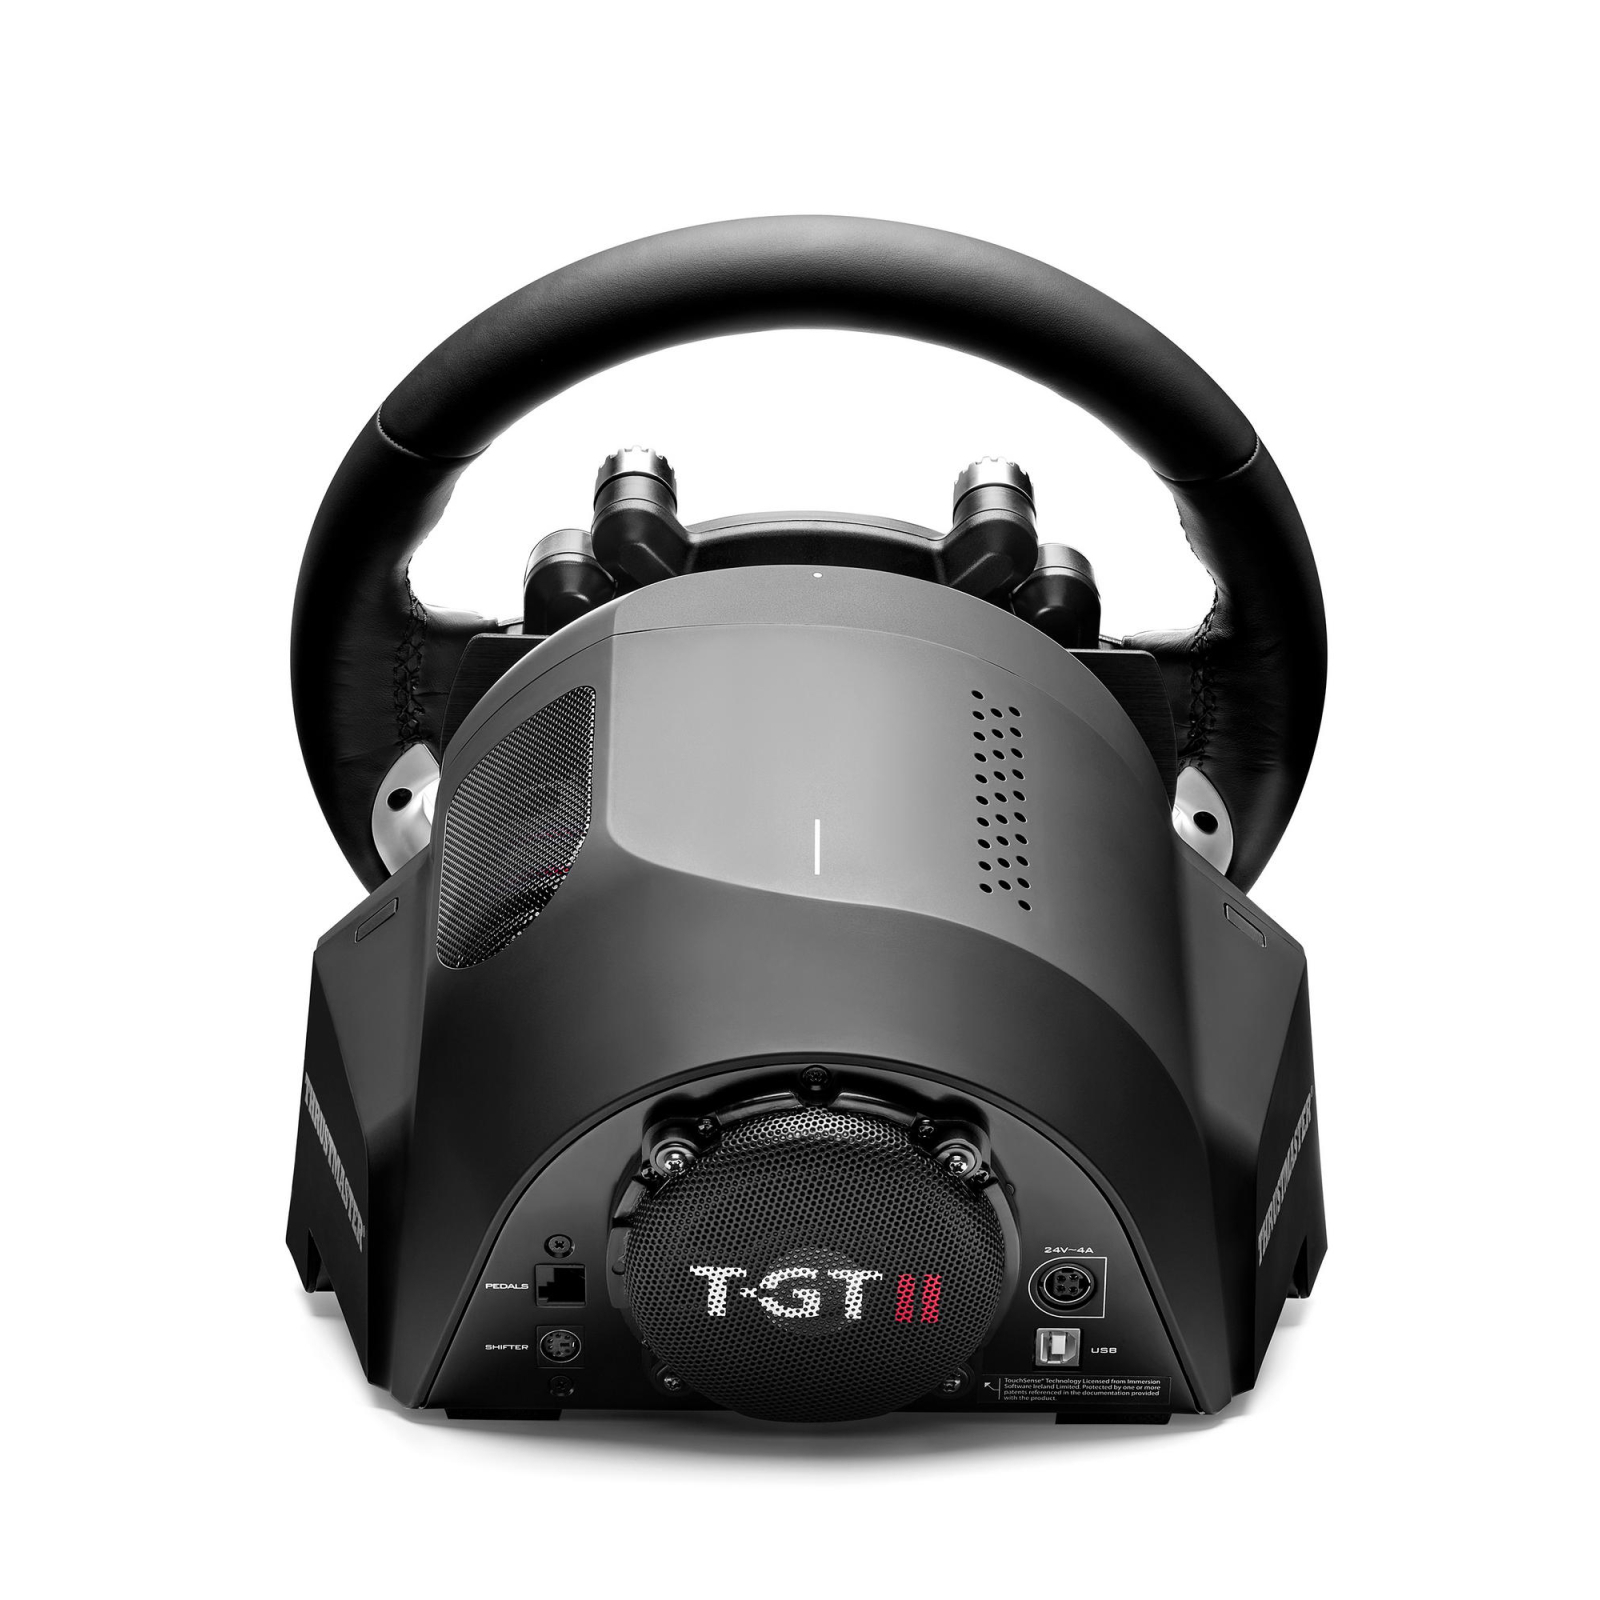 Руль ThrustMaster T-GT II для PC/PS4/PS5 (4160823) изображение 4